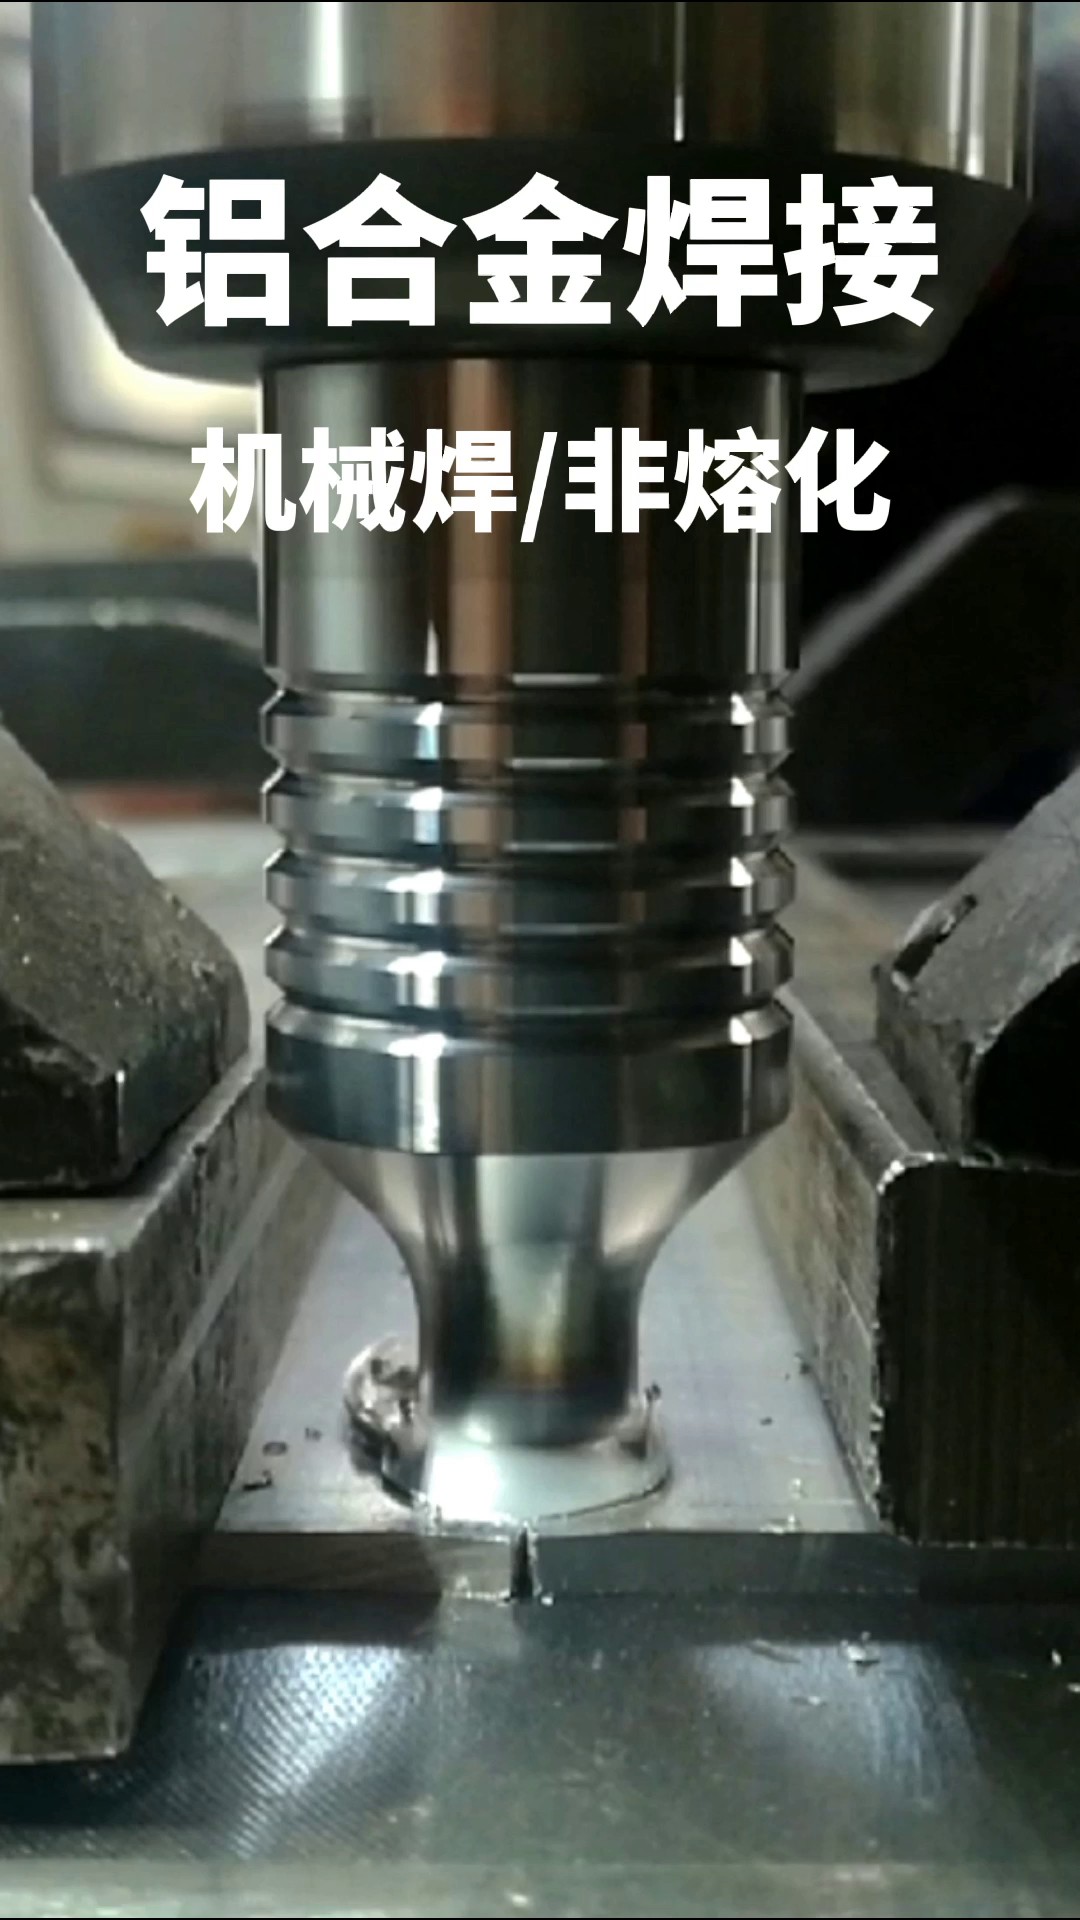 惠州铝板搅拌摩擦焊自动工装夹具,搅拌摩擦焊